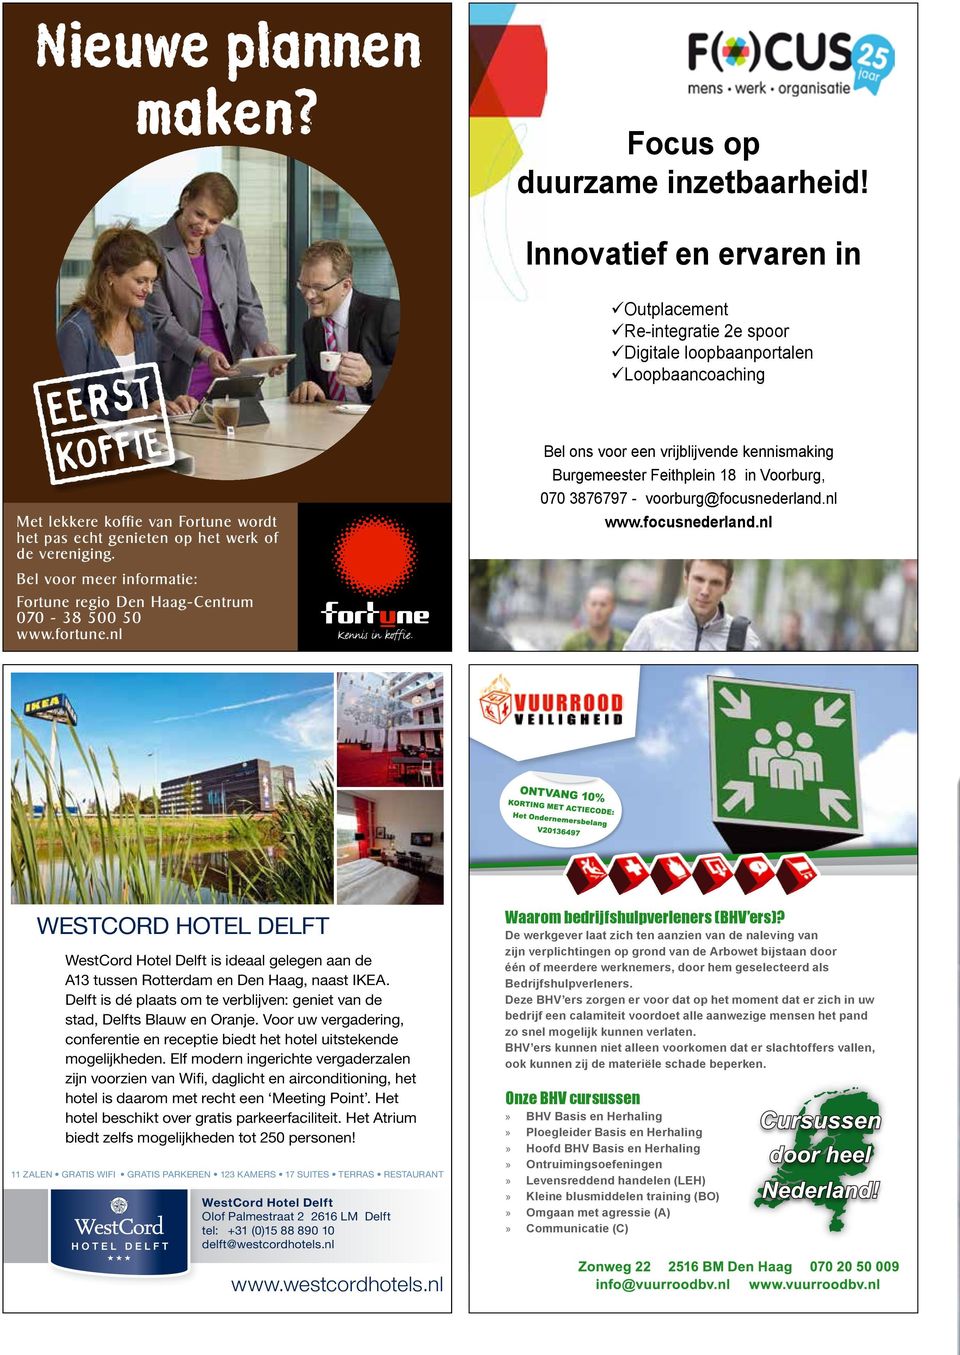 Bel voor meer informatie: Fortune regio Den Haag-Centrum 070-38 500 50 www.fortune.